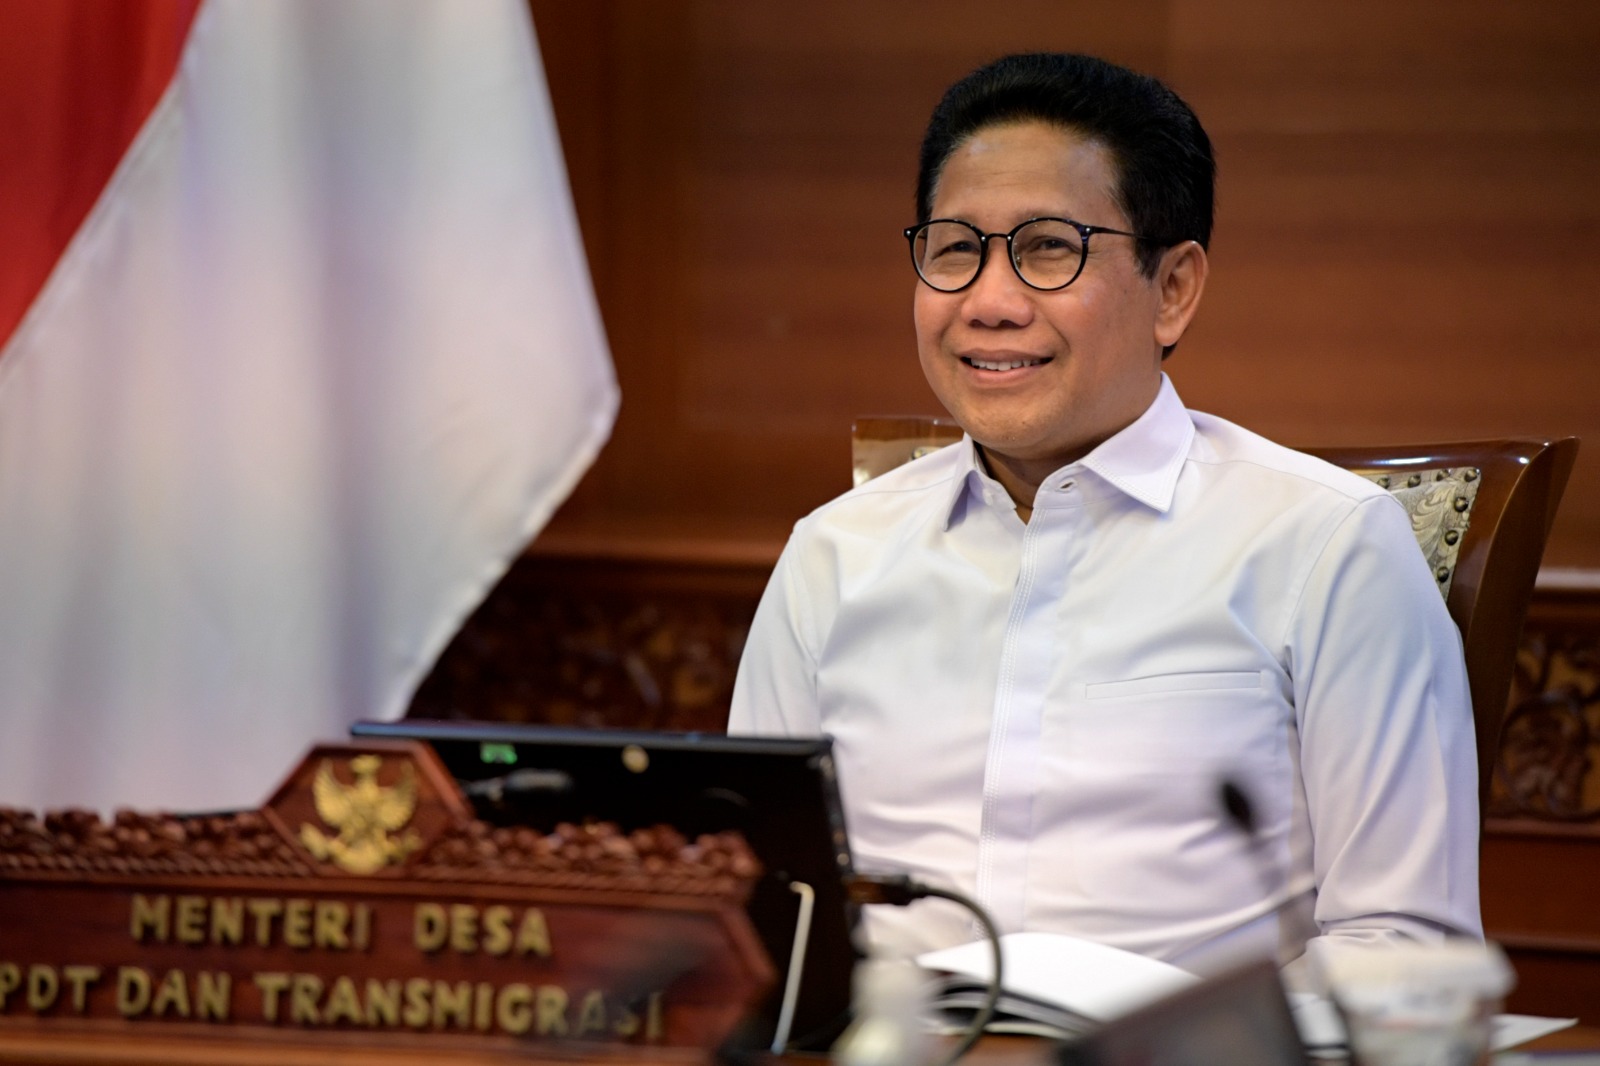 Menteri Desa, Pembangunan Daerah Tertinggal, dan Transmigrasi A Halim Iskandar.